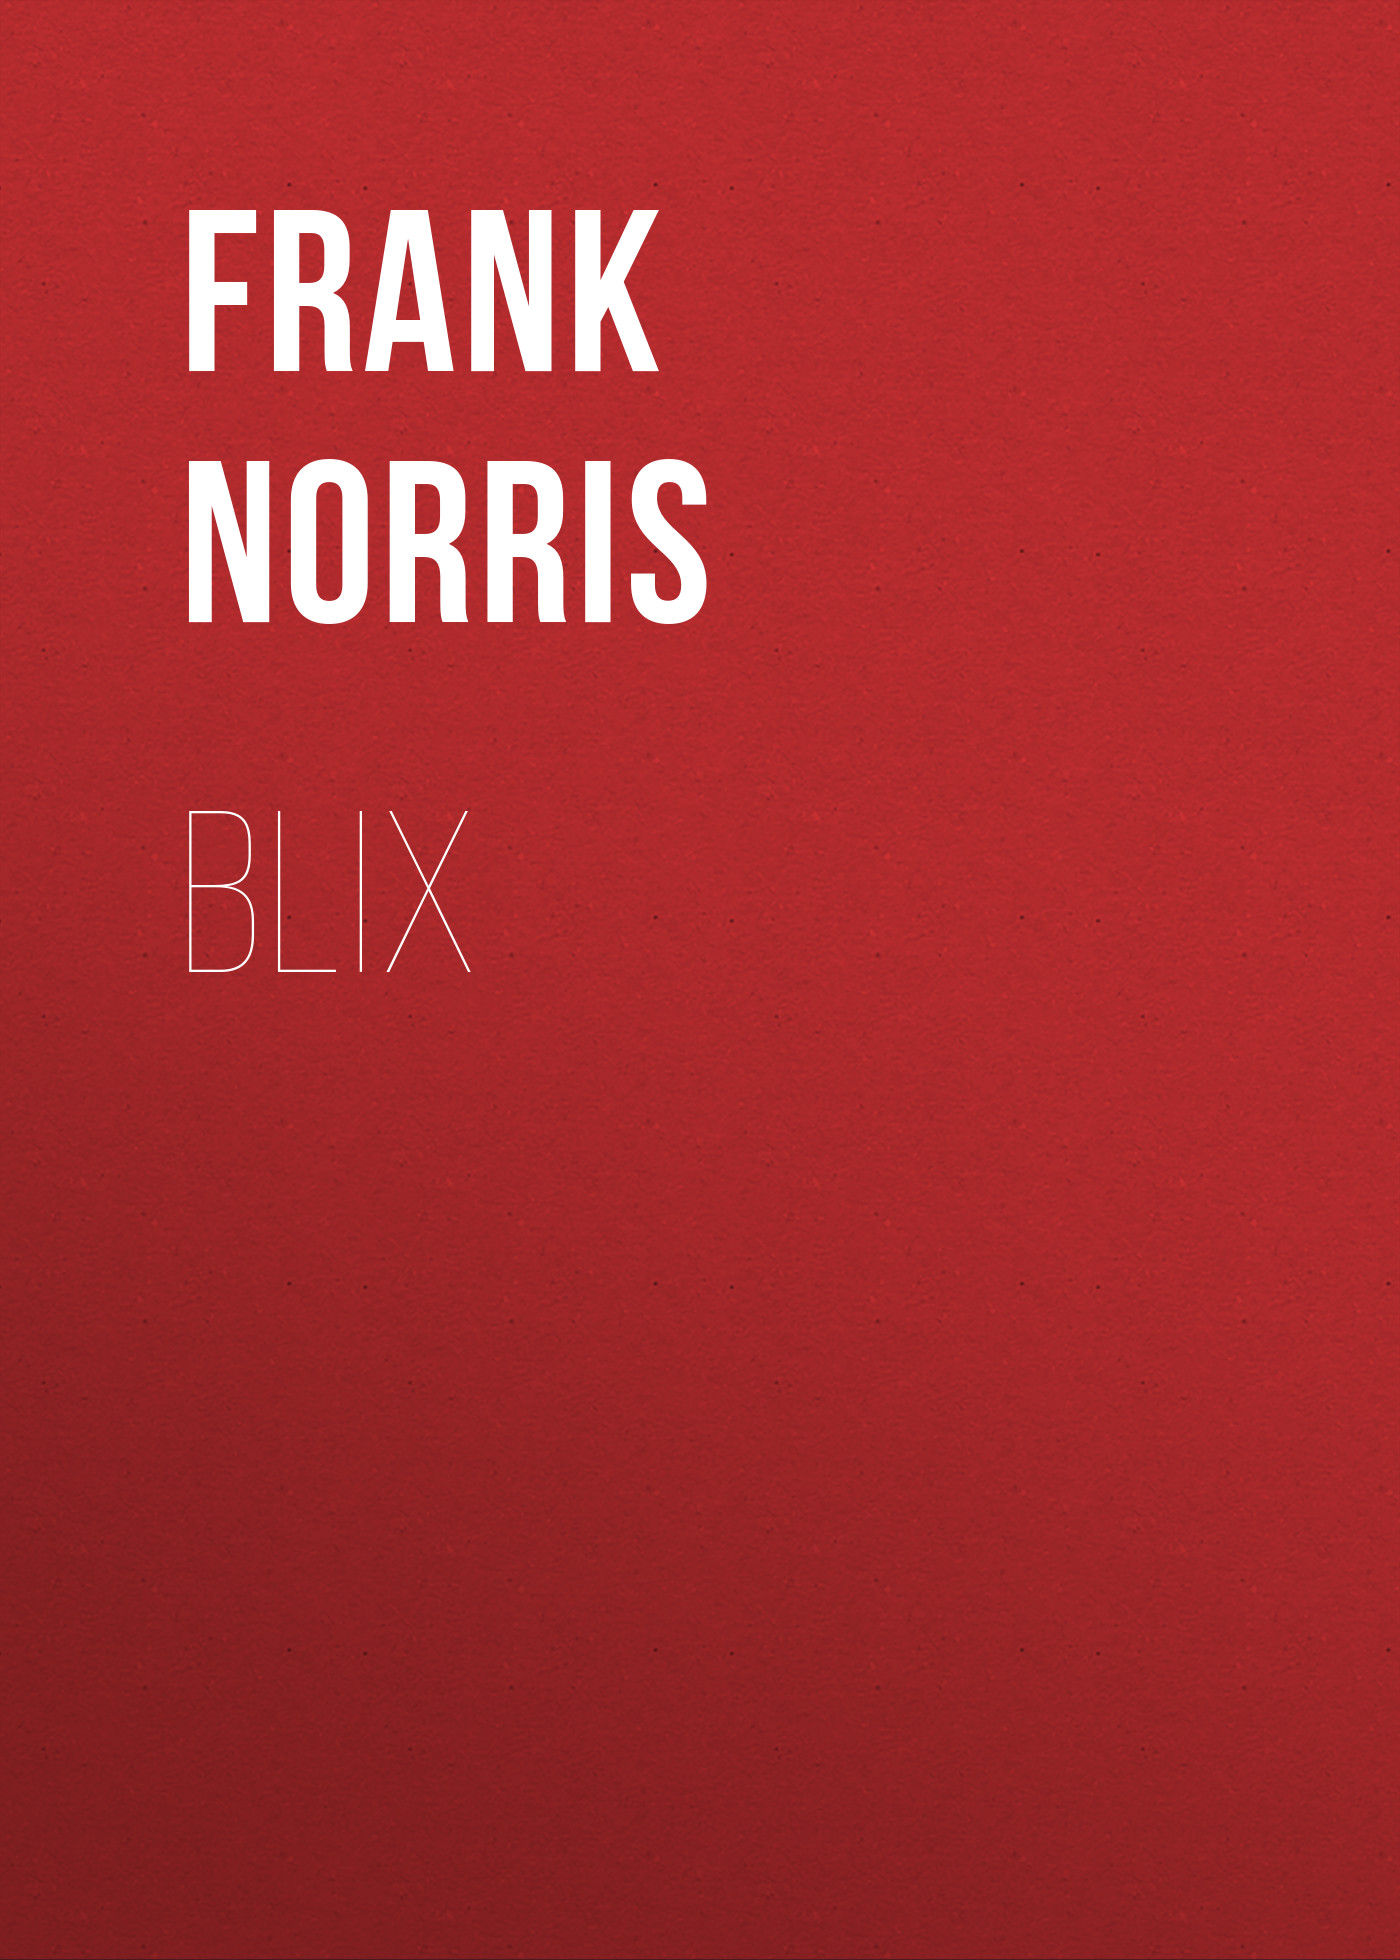 Книга Blix из серии , созданная Frank Norris, может относится к жанру Зарубежная классика, Литература 19 века, Зарубежная старинная литература. Стоимость электронной книги Blix с идентификатором 36095829 составляет 0 руб.